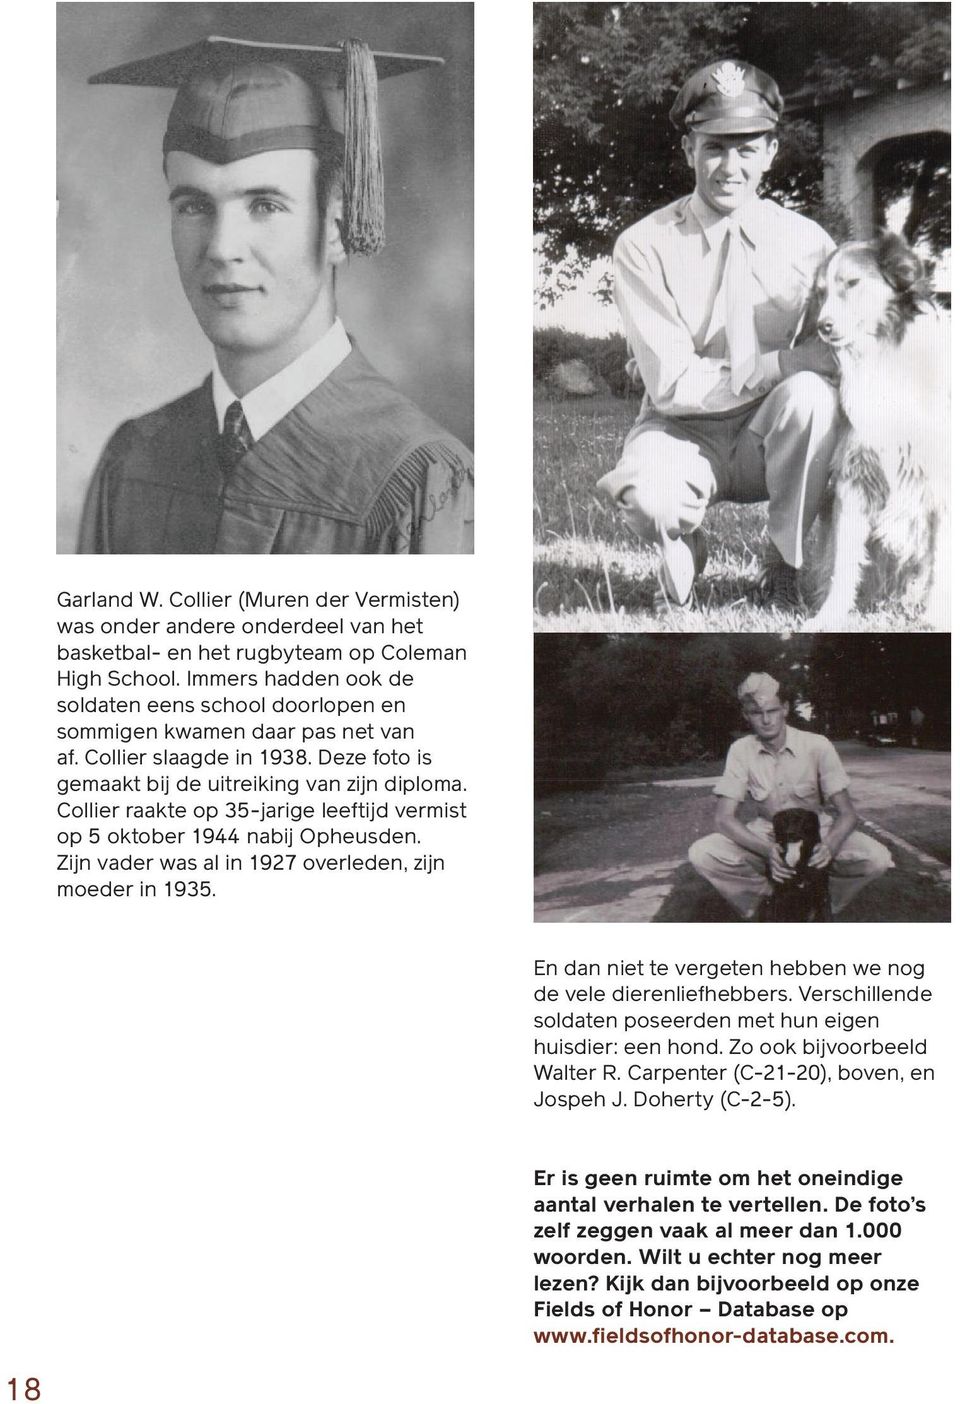 Collier raakte op 35-jarige leeftijd vermist op 5 oktober 1944 nabij Opheusden. Zijn vader was al in 1927 overleden, zijn moeder in 1935.